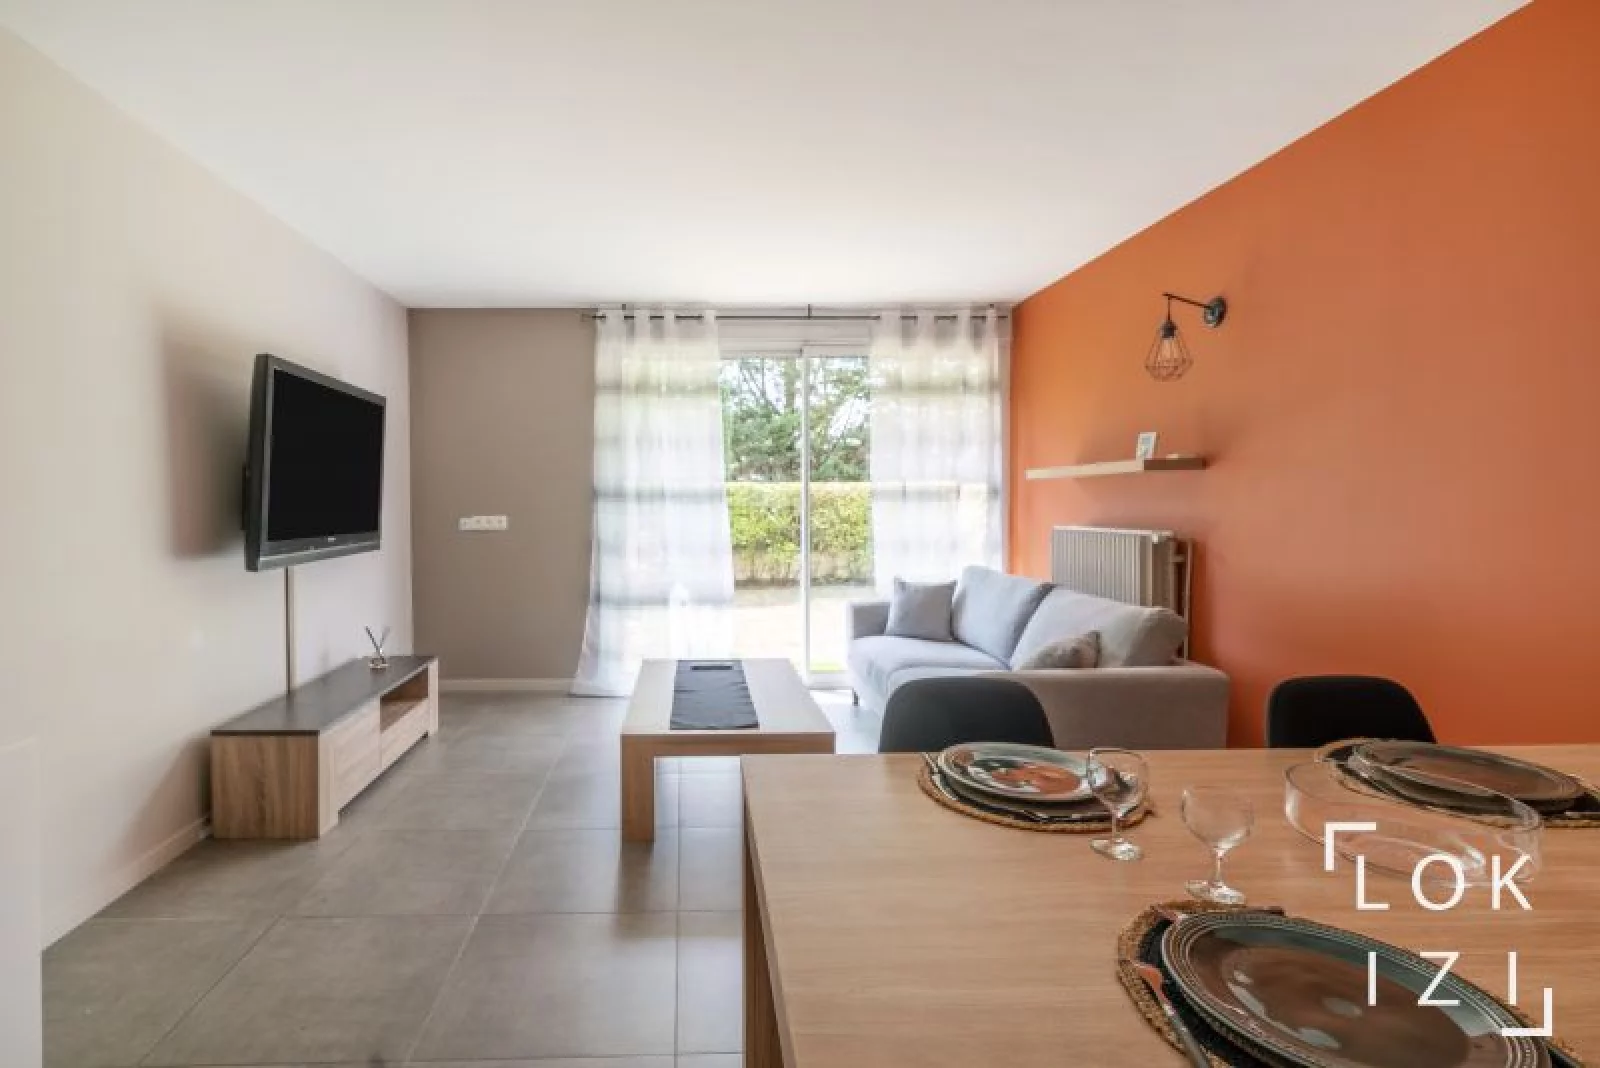 Location appartement meublé 3 pièces 74 m² (Orléans nord/ Saran 45)